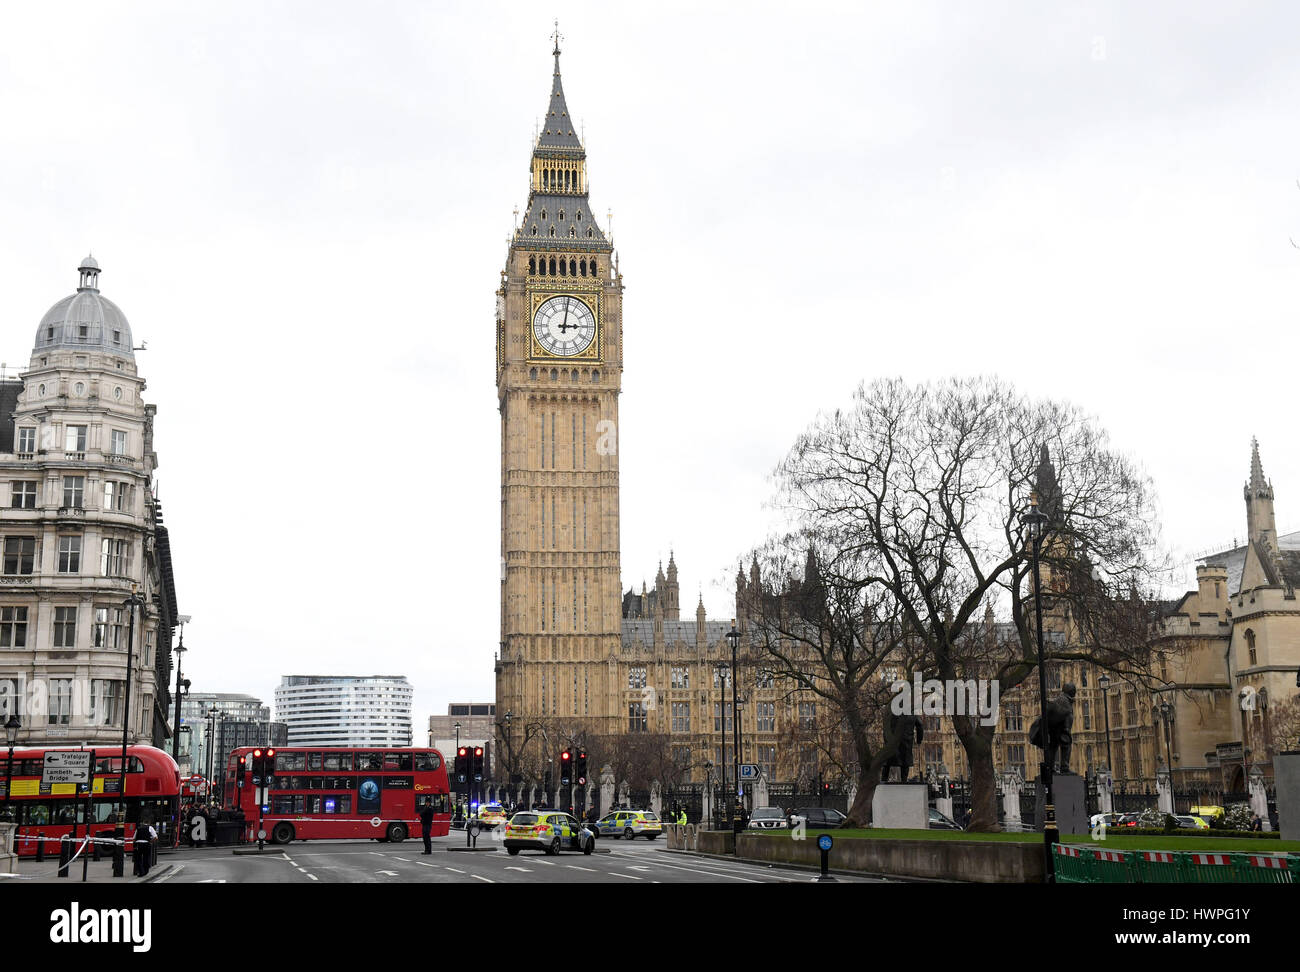 Polizei außerhalb des Palace of Westminster, London, nachdem klingt ähnlich wie Schüsse in der Nähe des Palace of Westminster gehört worden. Ein Mann mit einem Messer innerhalb der Grenzen des Palastes gesehen wurde, sagten Augenzeugen. Stockfoto